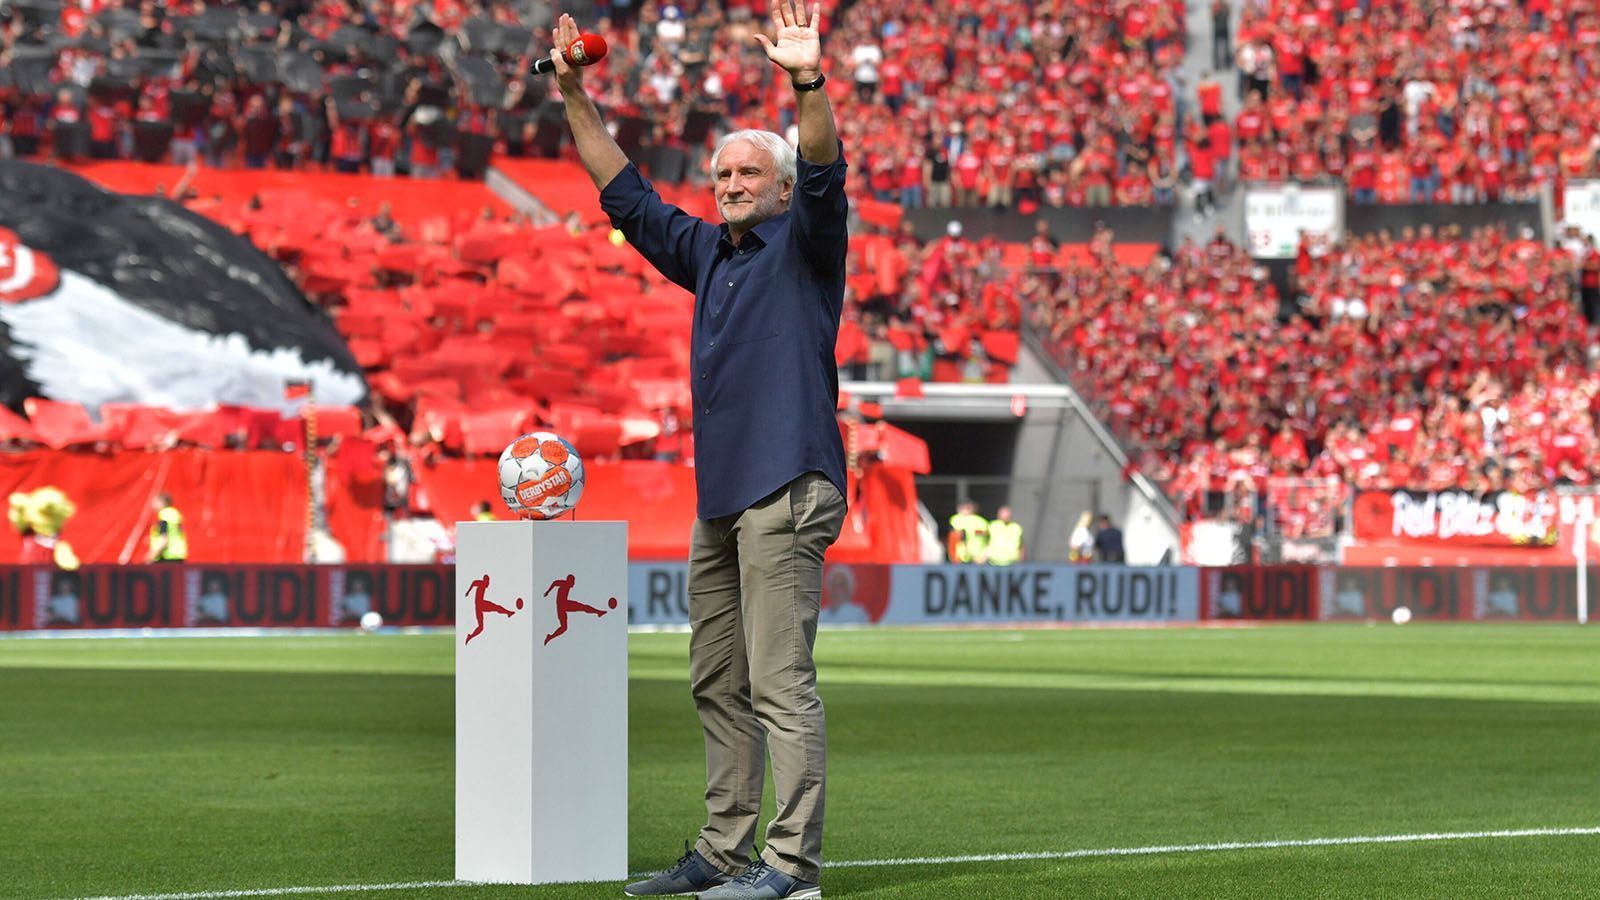 
                <strong>Rudi Völler geht in den Ruhestand</strong><br>
                Auch Rudi Völler verabschiedet sich am 34. Spieltag von der großen Bühne der Bundesliga. Seit 2005 ist der mittlerweile 62-Jährige als Sportdirektor, seit 2018 als Geschäftsführer bei Bayer 04 Leverkusen tätig. In dieser Zeit formt er den Klub zu einem Dauergast in den europäischen Wettbewerben und sorgt immer wieder mit einem seiner markanten Sprüche für Aufsehen. Einziges Manko seiner Amtszeit: Der Verein gewinnt keinen einzigen Titel.
              